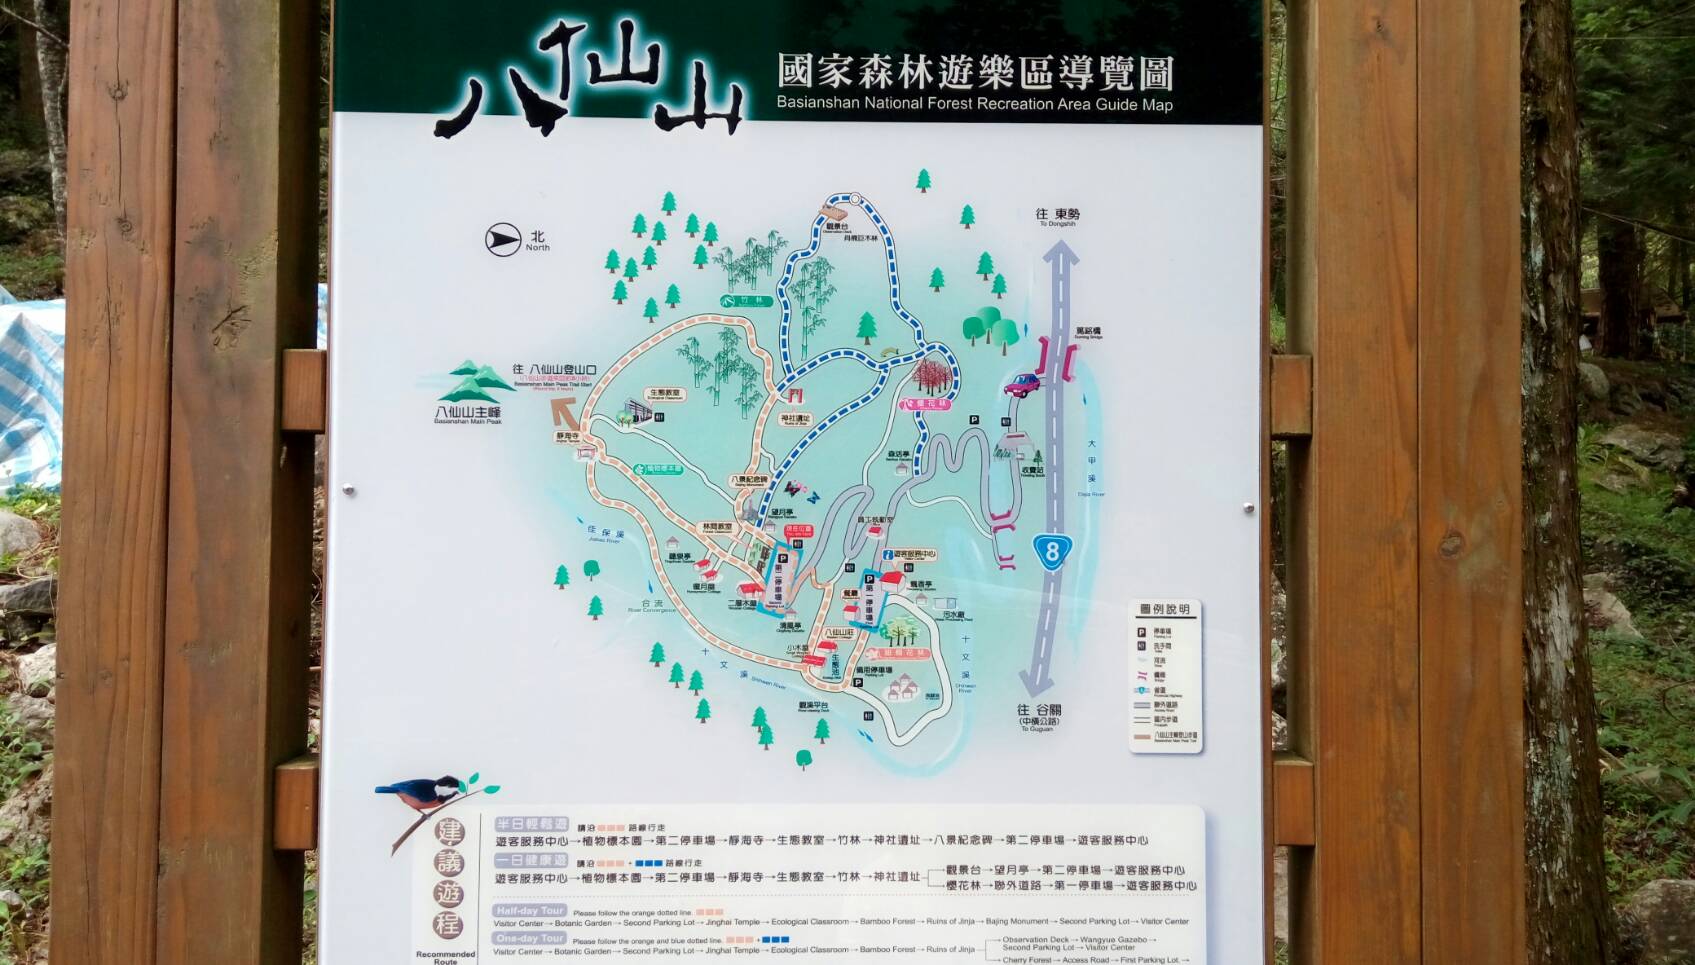 八仙山國家森林導覽圖